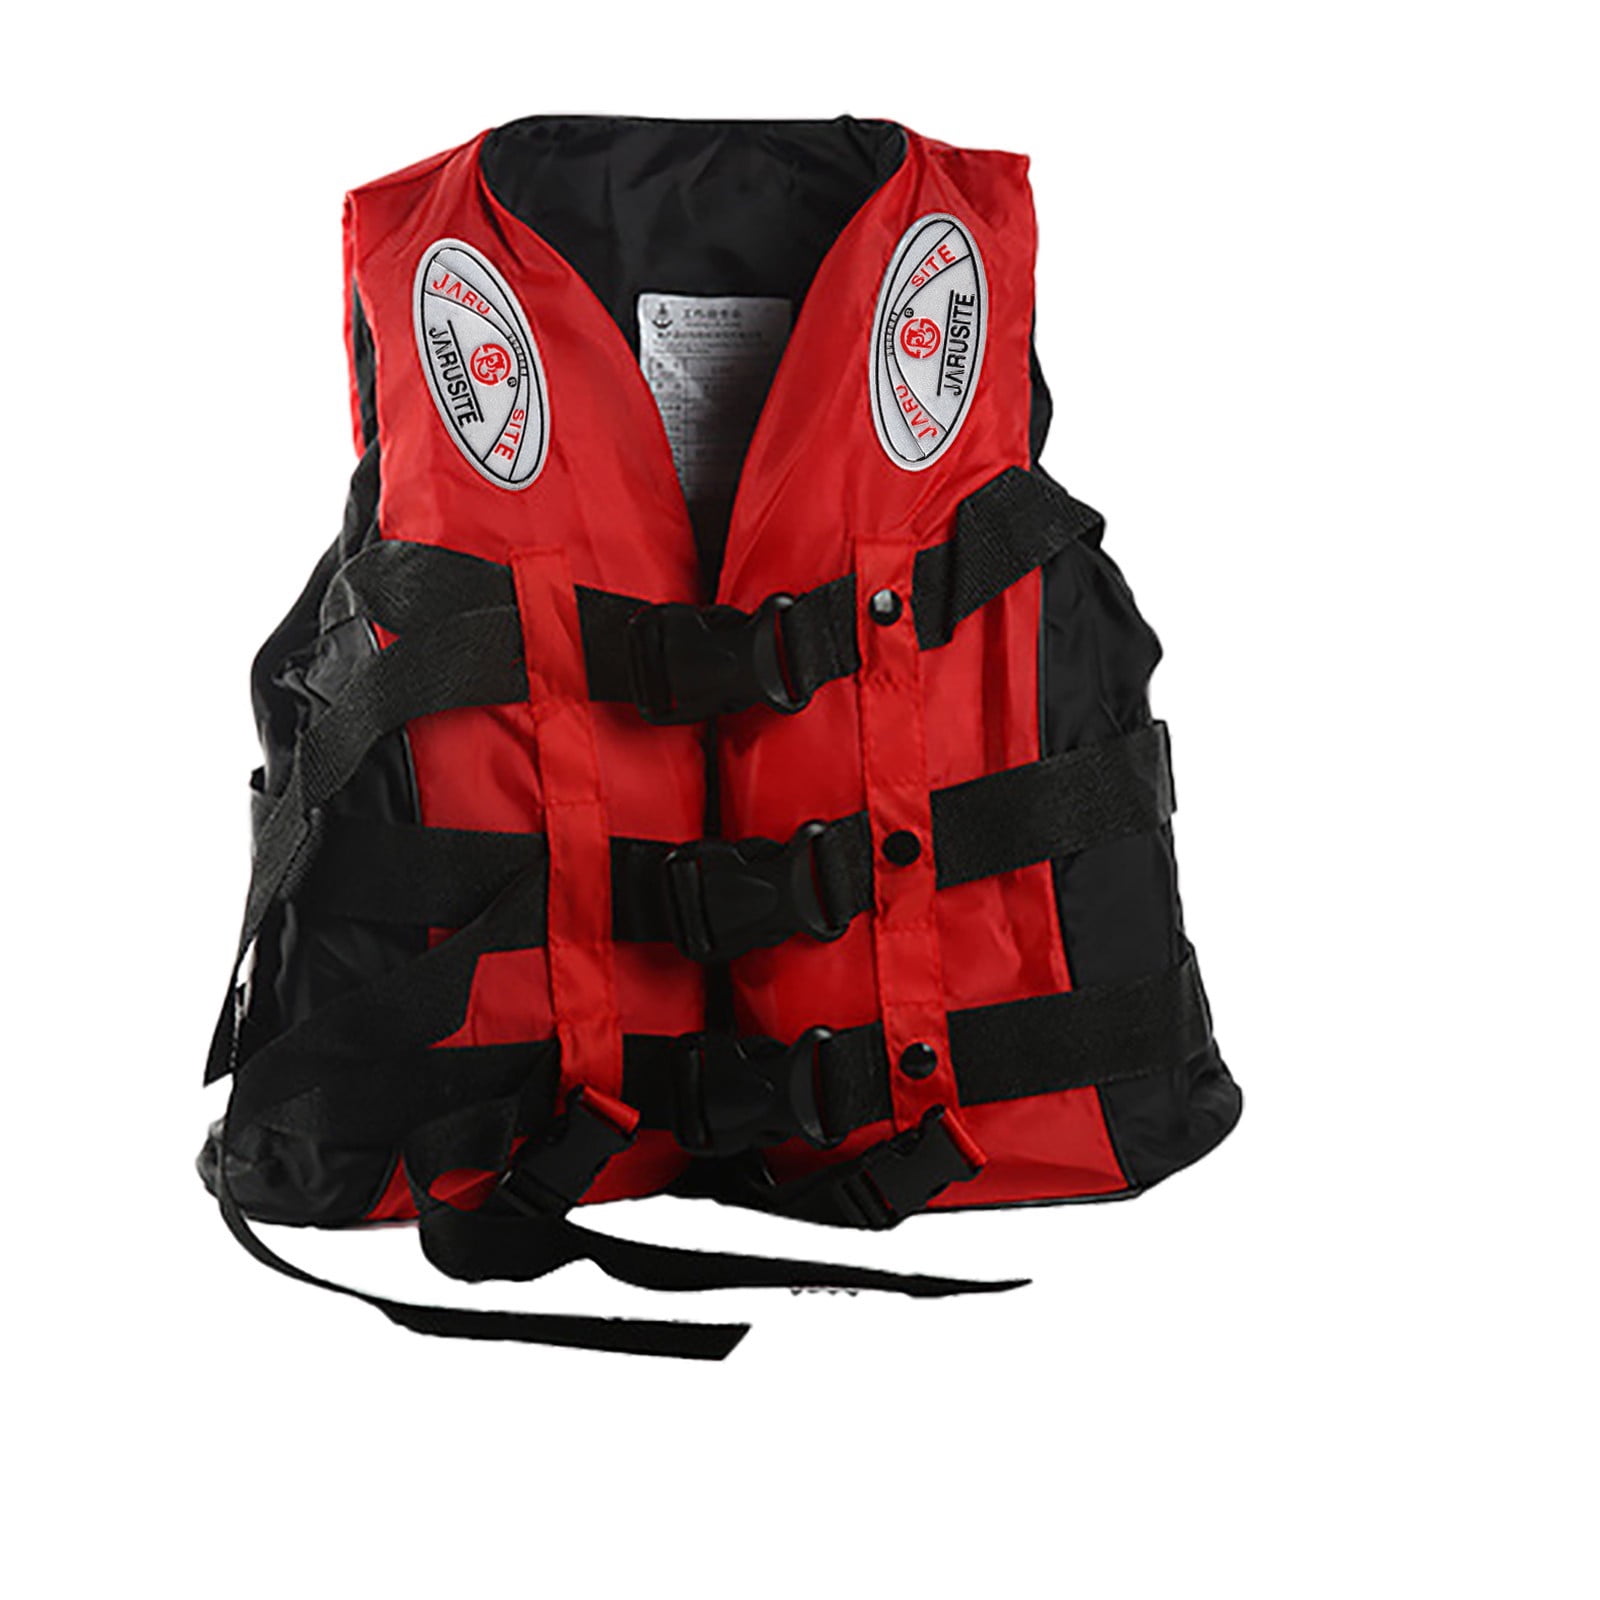 Adjustable Automatic Life Jacket Vest Boat Buoyancy Aid Sailing Kayak Fishing 